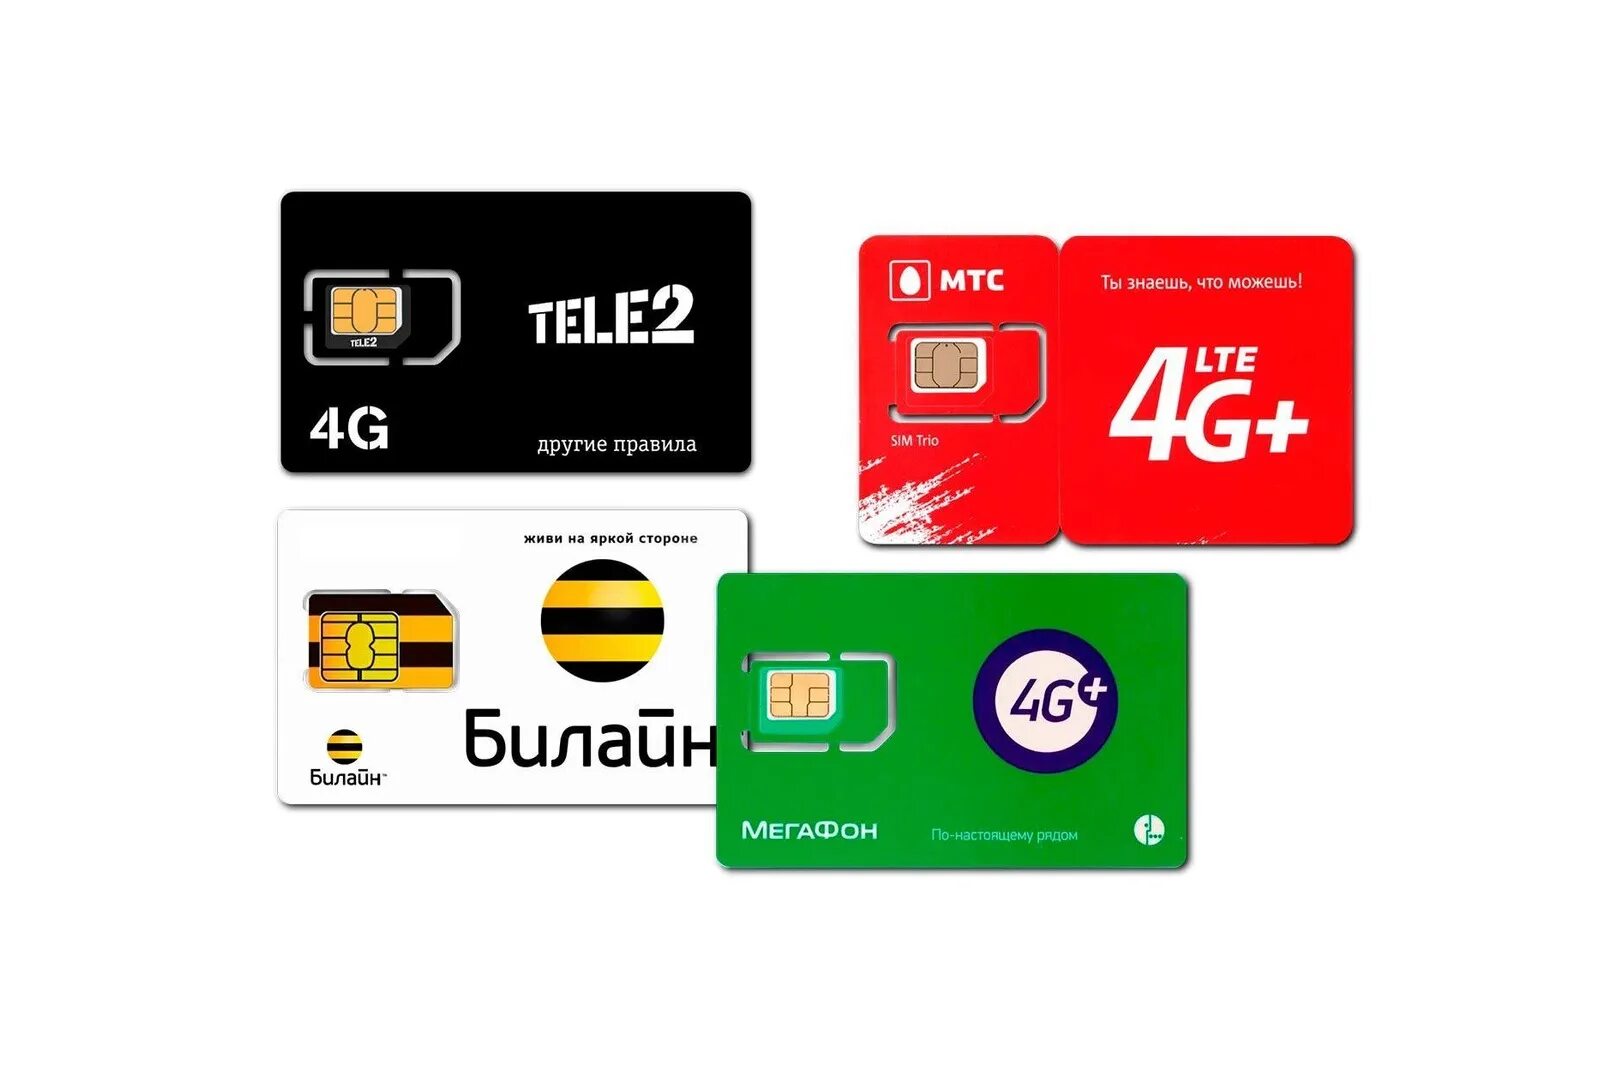 SIM-карта теле2, МТС, Билайн, МЕГАФОН. Готовый комплект для усиления мобильного 3g 4g LTE. Симка безлимит. Сим карта для интернета.